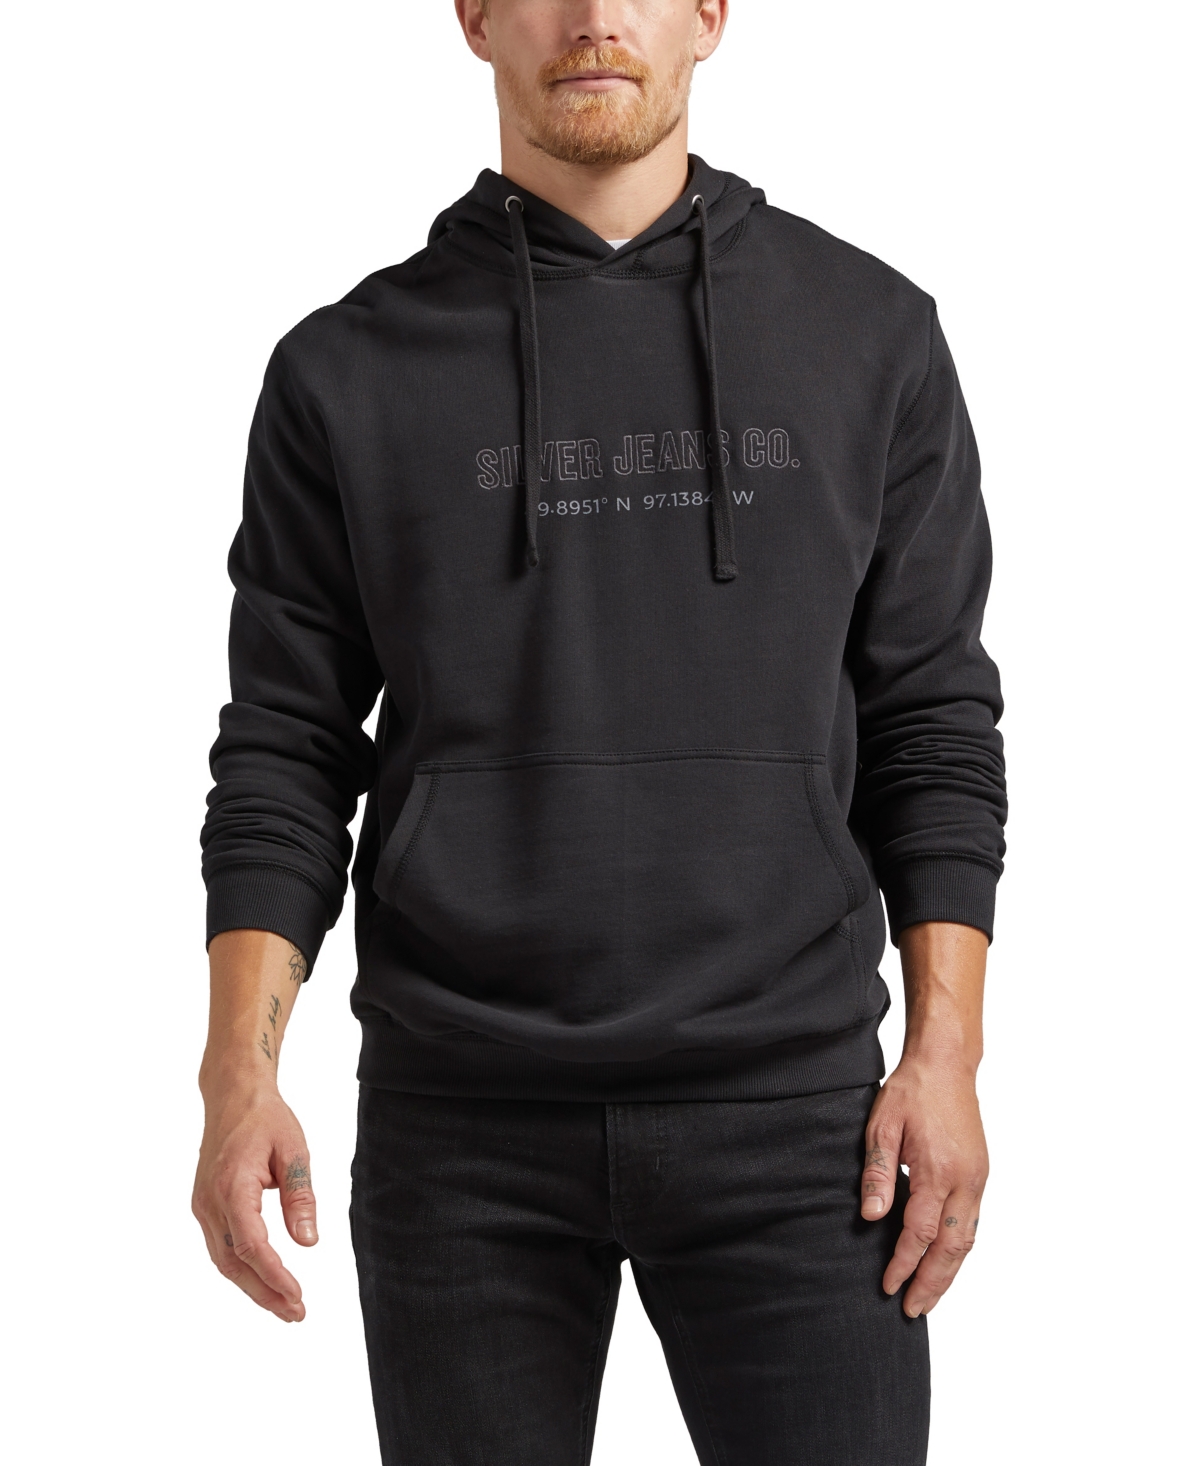 Silver Jeans Co. Men's Logo Hoodie Sweatshirt In Black